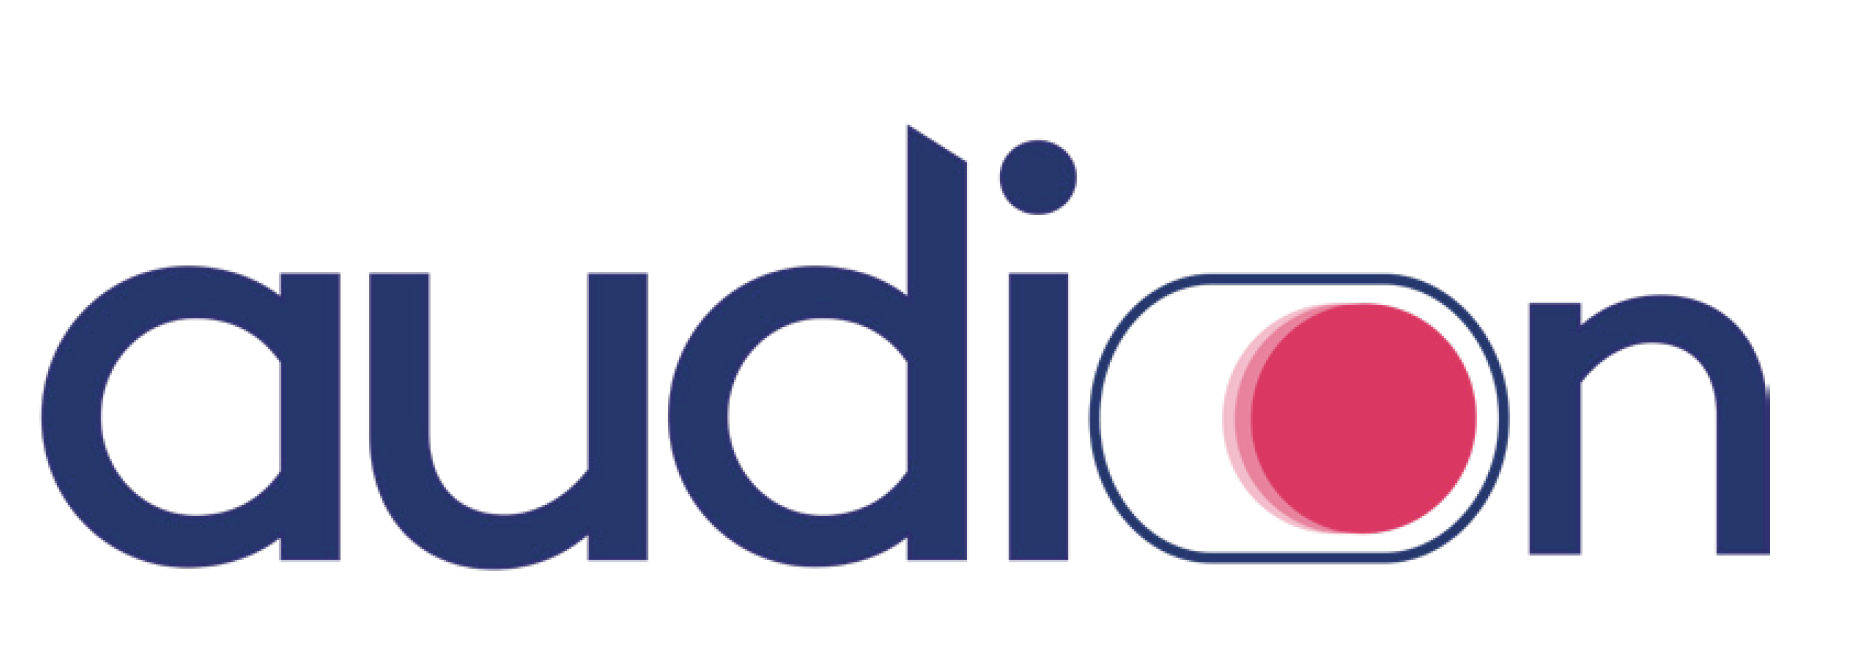 Prisma Media, Unify, M6 et Planet intègrent PrintAudio d’Audion